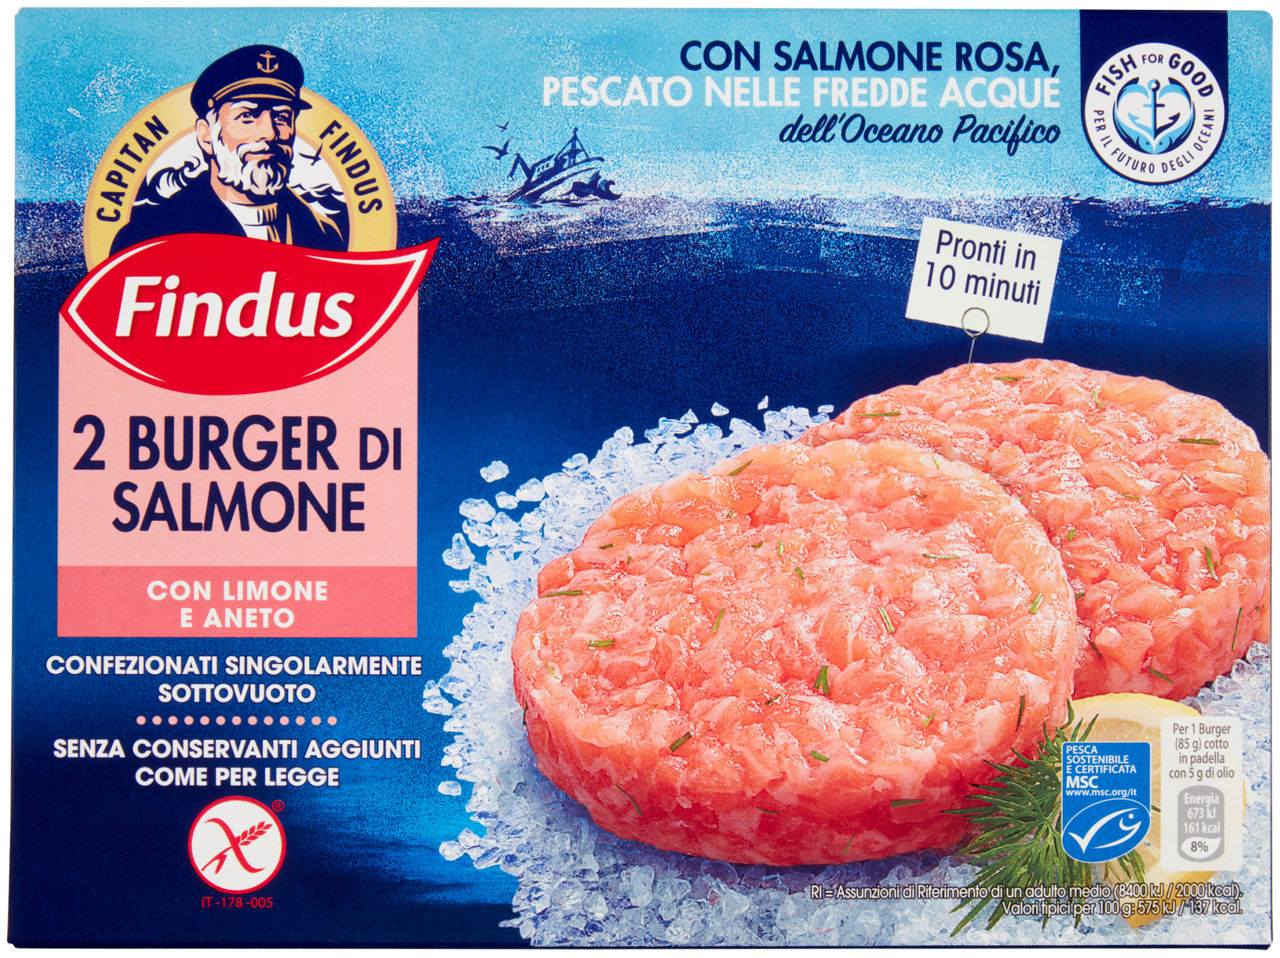 Burger di salmone con limone e aneto msc capitan findus scatola x2 g 170